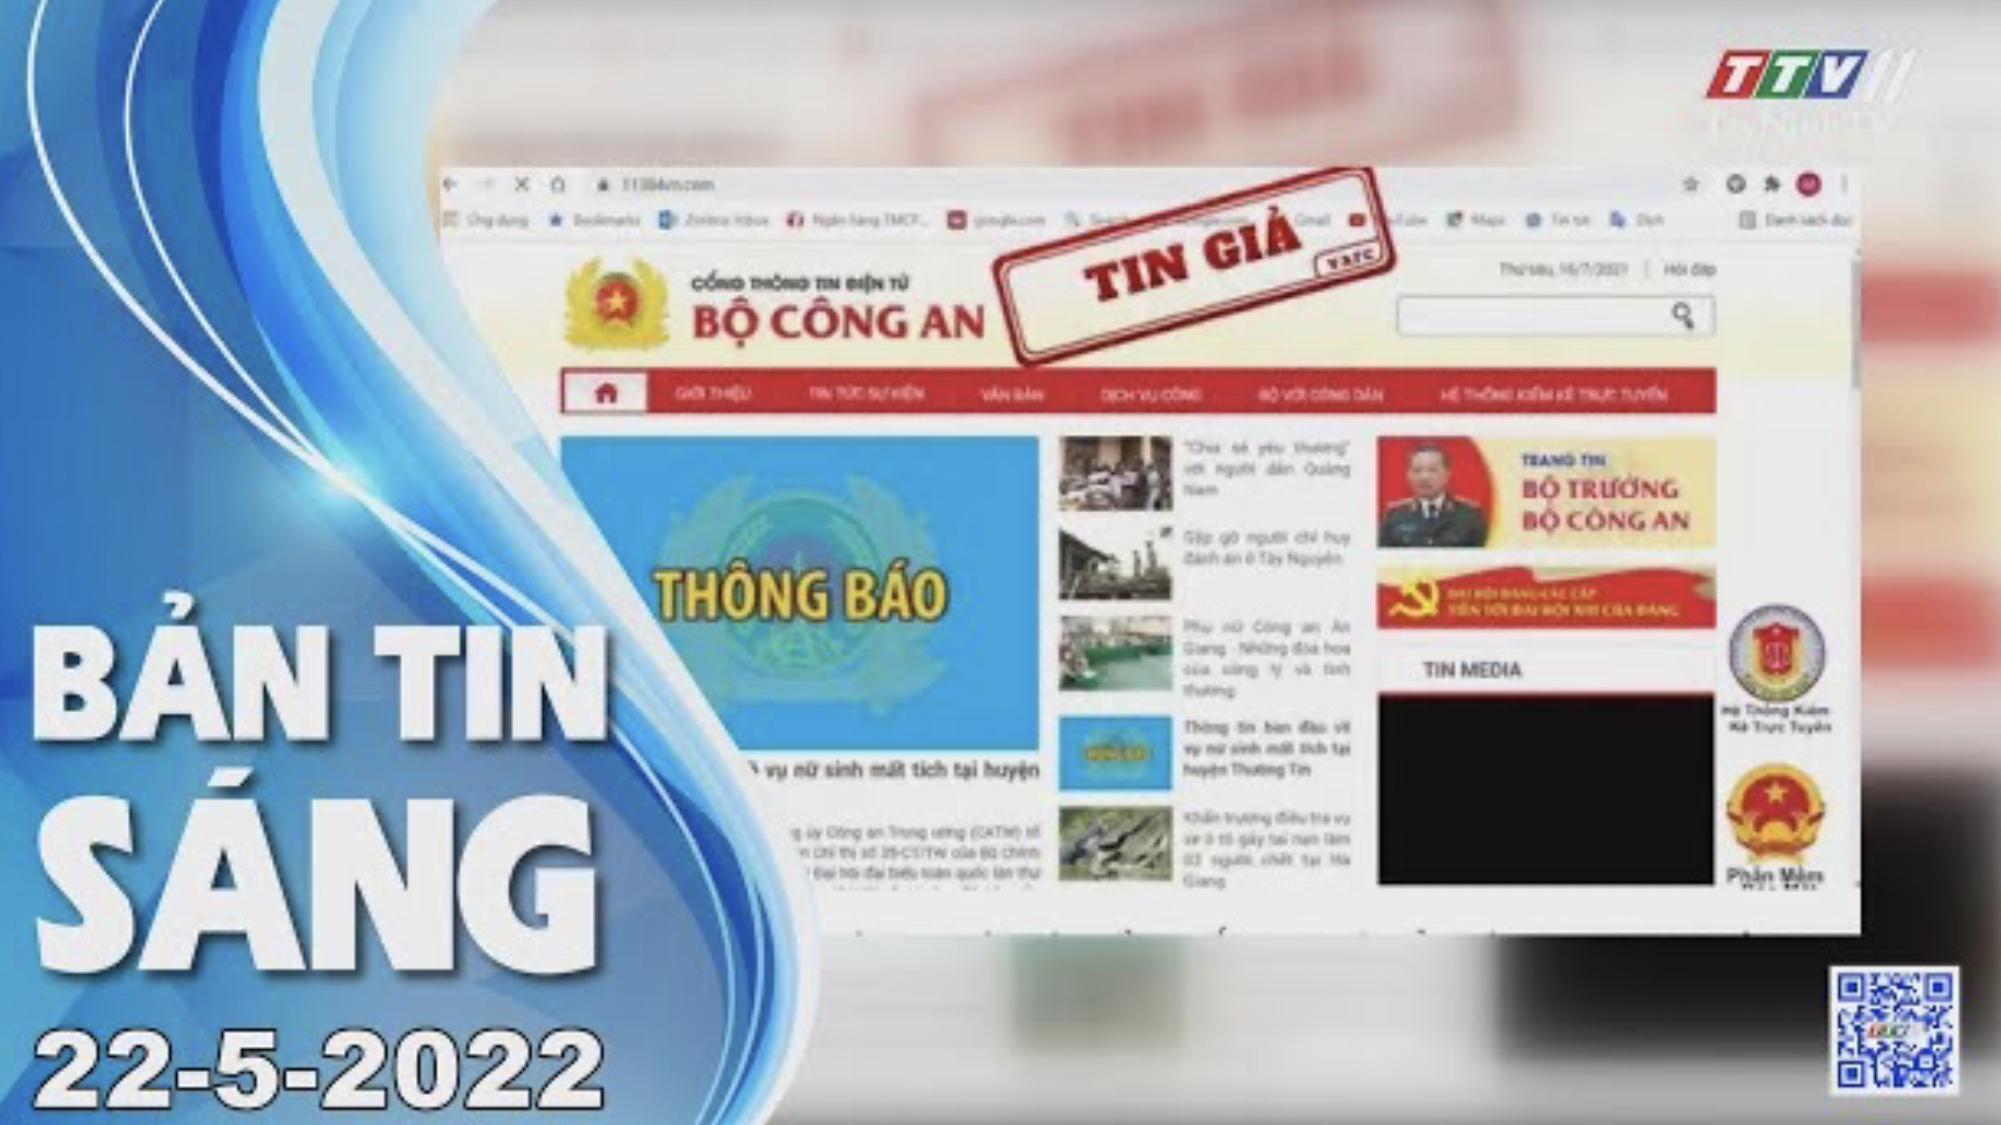 Bản tin sáng 22-5-2022 | Tin tức hôm nay | TayNinhTV